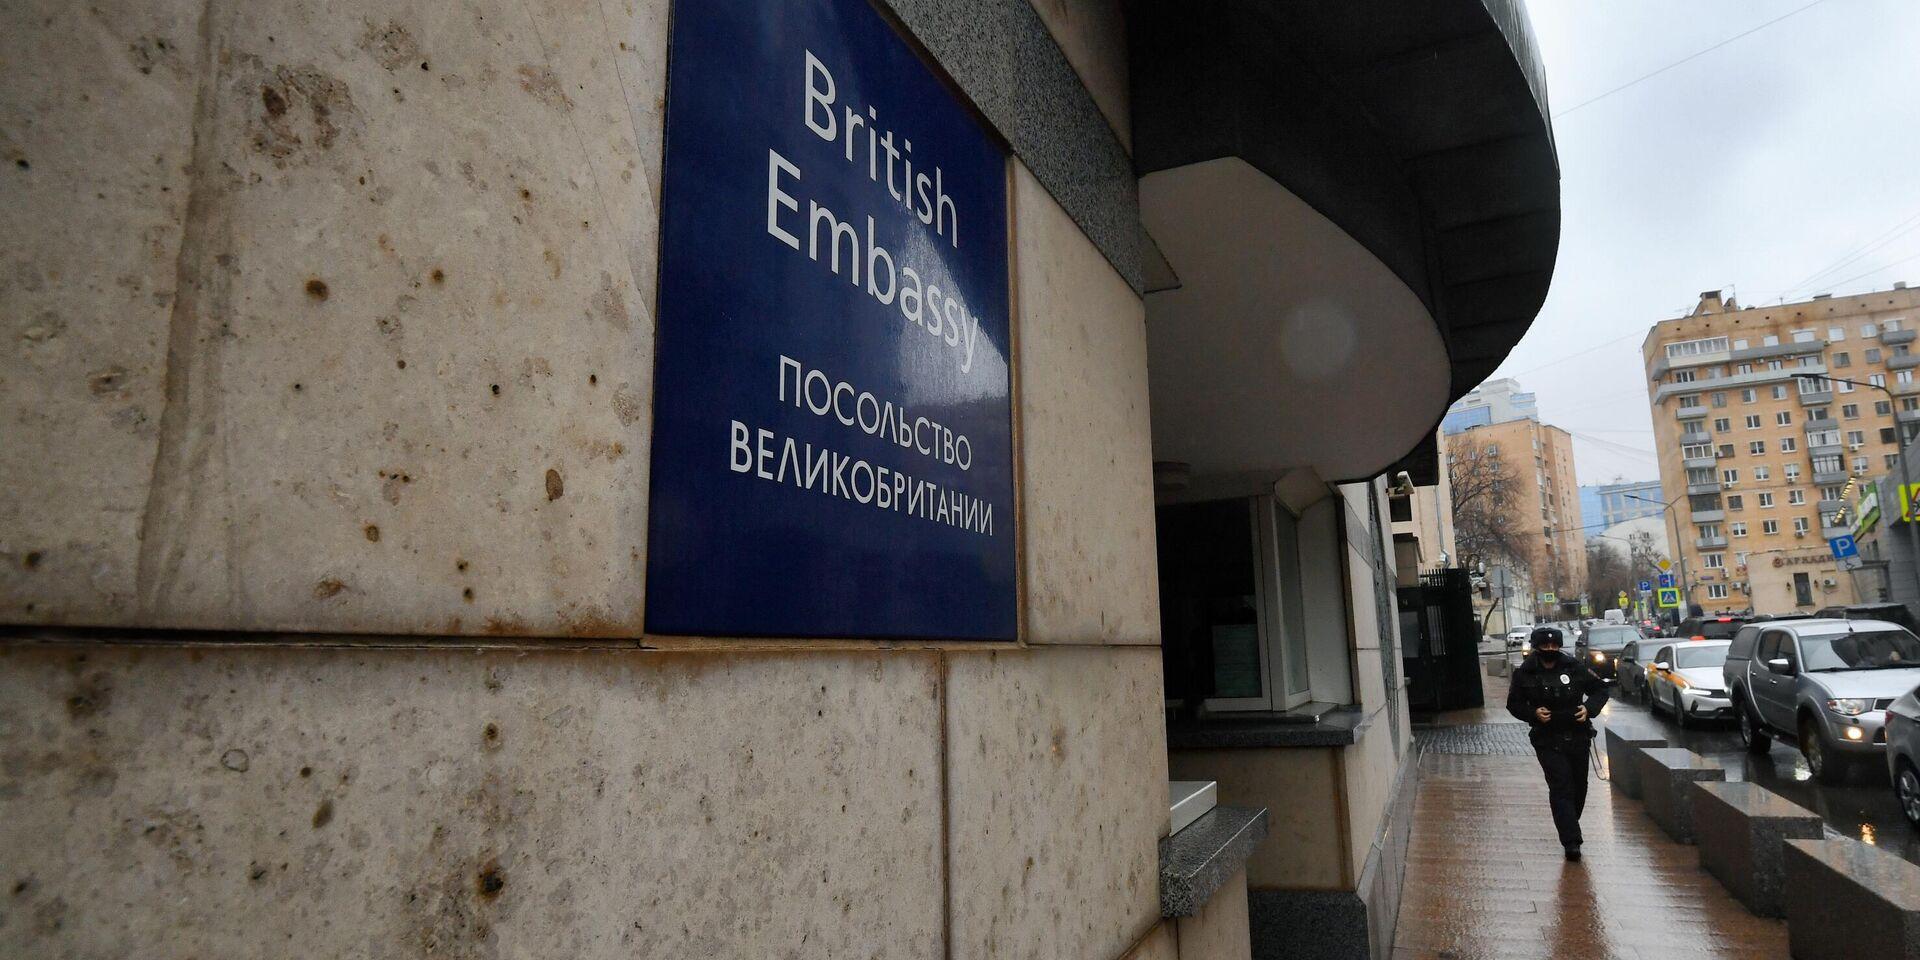 Британское посольство в Москве "переедет" на площадь Луганской Народной Республики